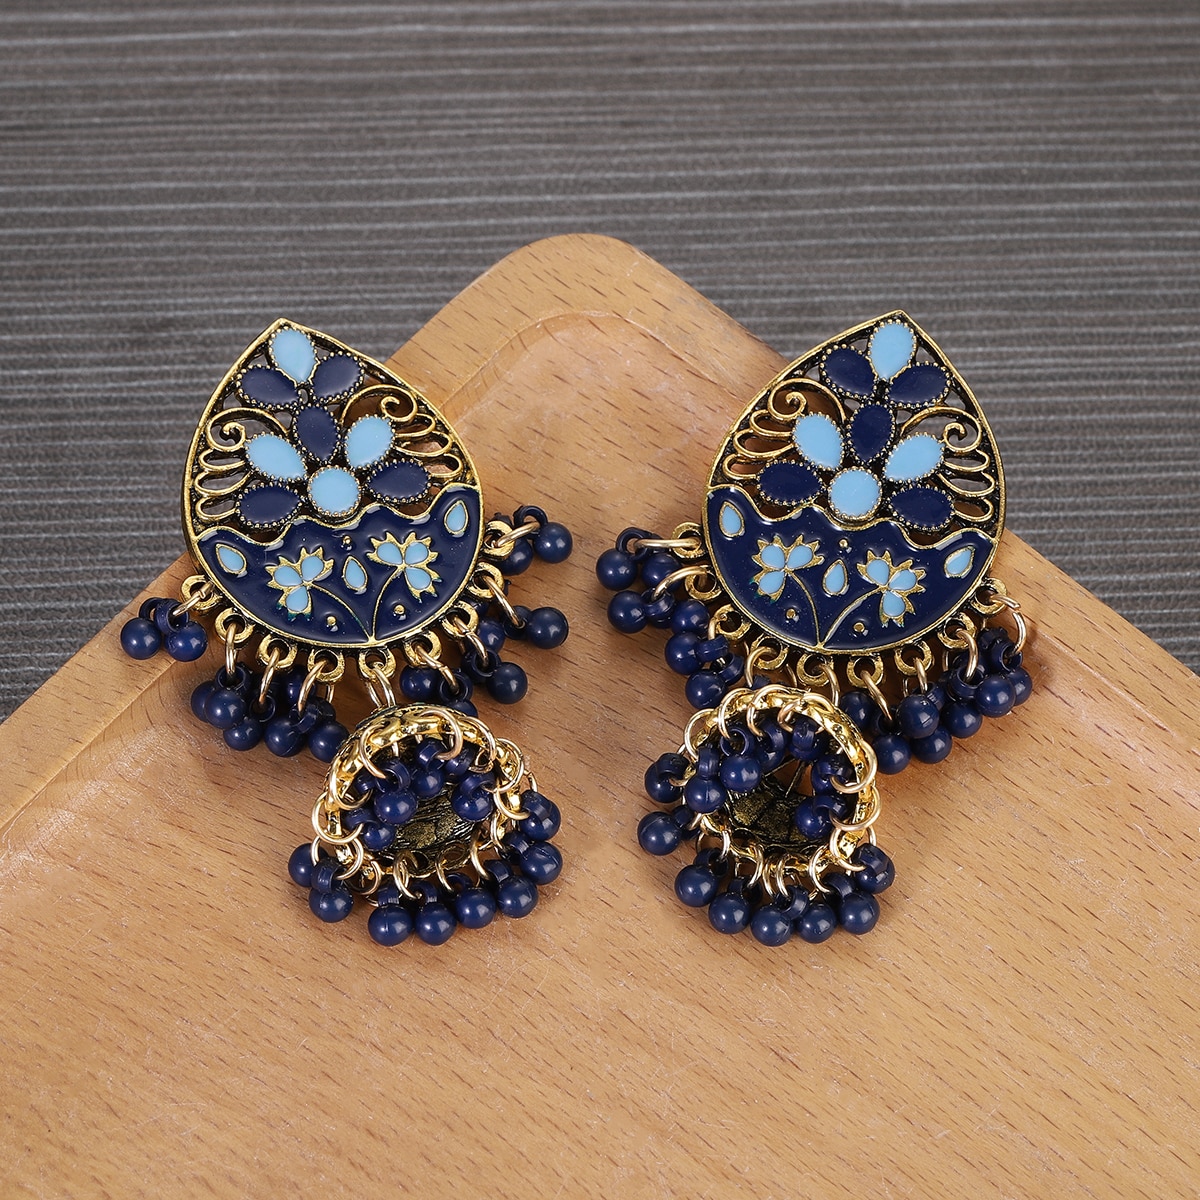 Vintage-Fashion-Water-Drop-Dangle-Earrings-for-Women-Ethnic-Indian-Jewelry-Blue-Flower-Tassel-Dangli-3256804947025776-7